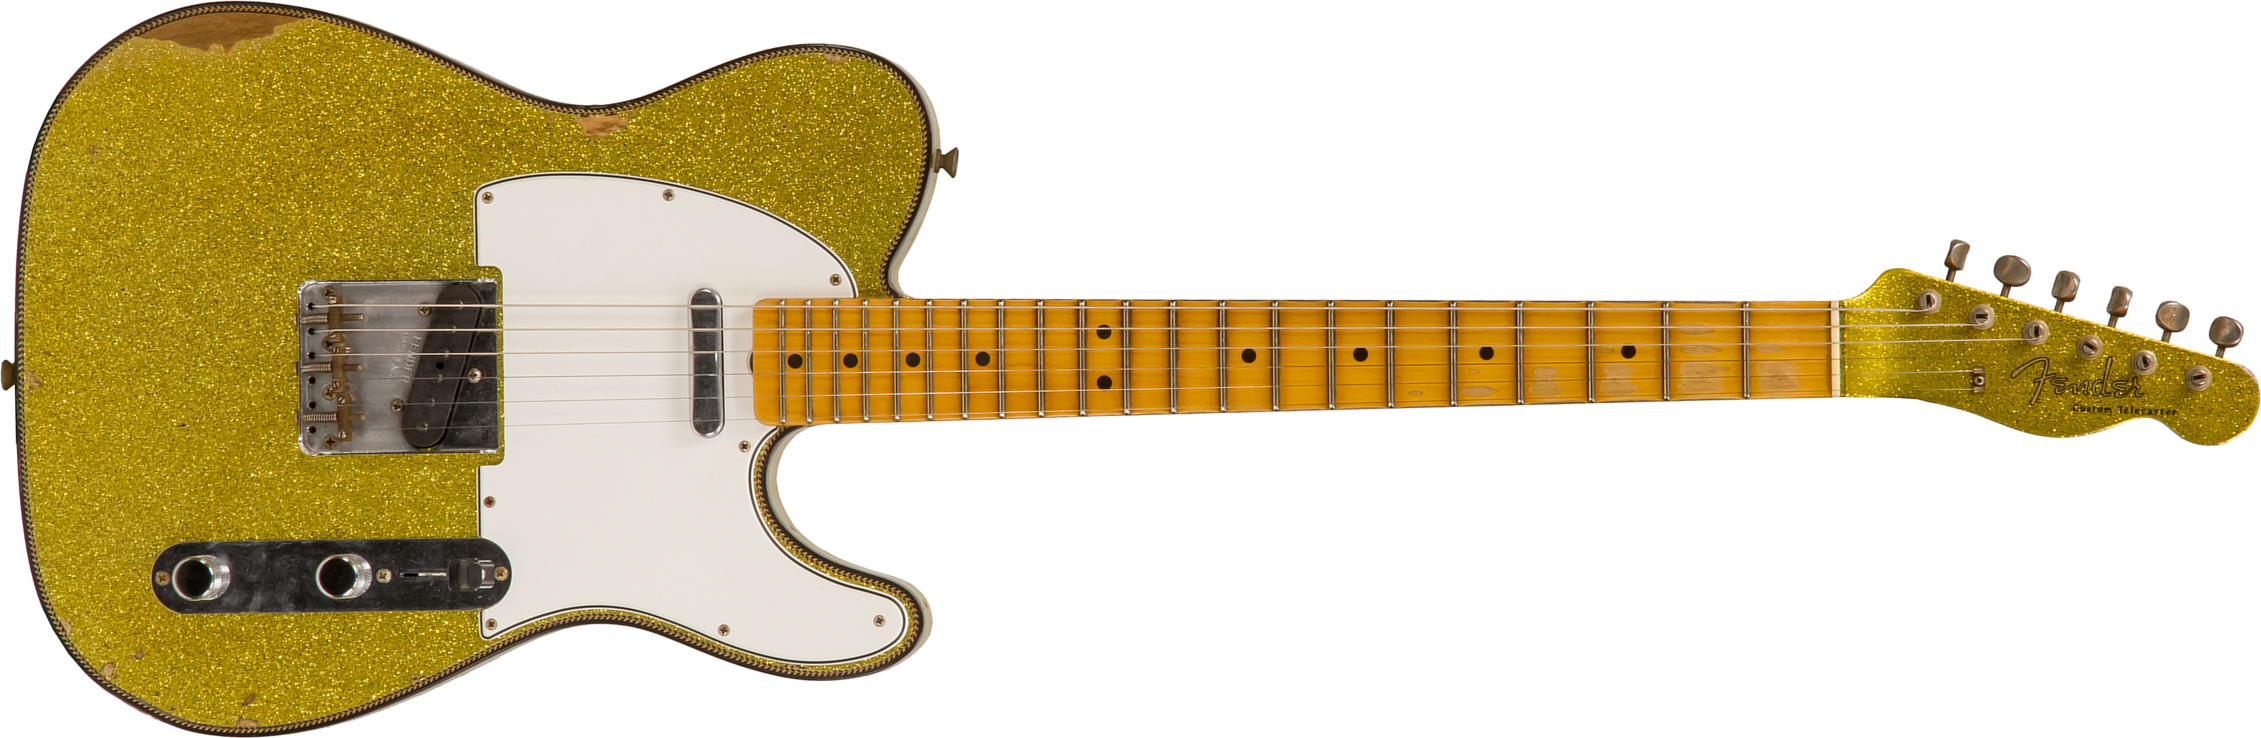 Fender Custom Shop Tele Custom 1963 2020 Ltd Rw #cz545983 - Relic Chartreuse Sparkle - Guitare Électrique Forme Tel - Main picture